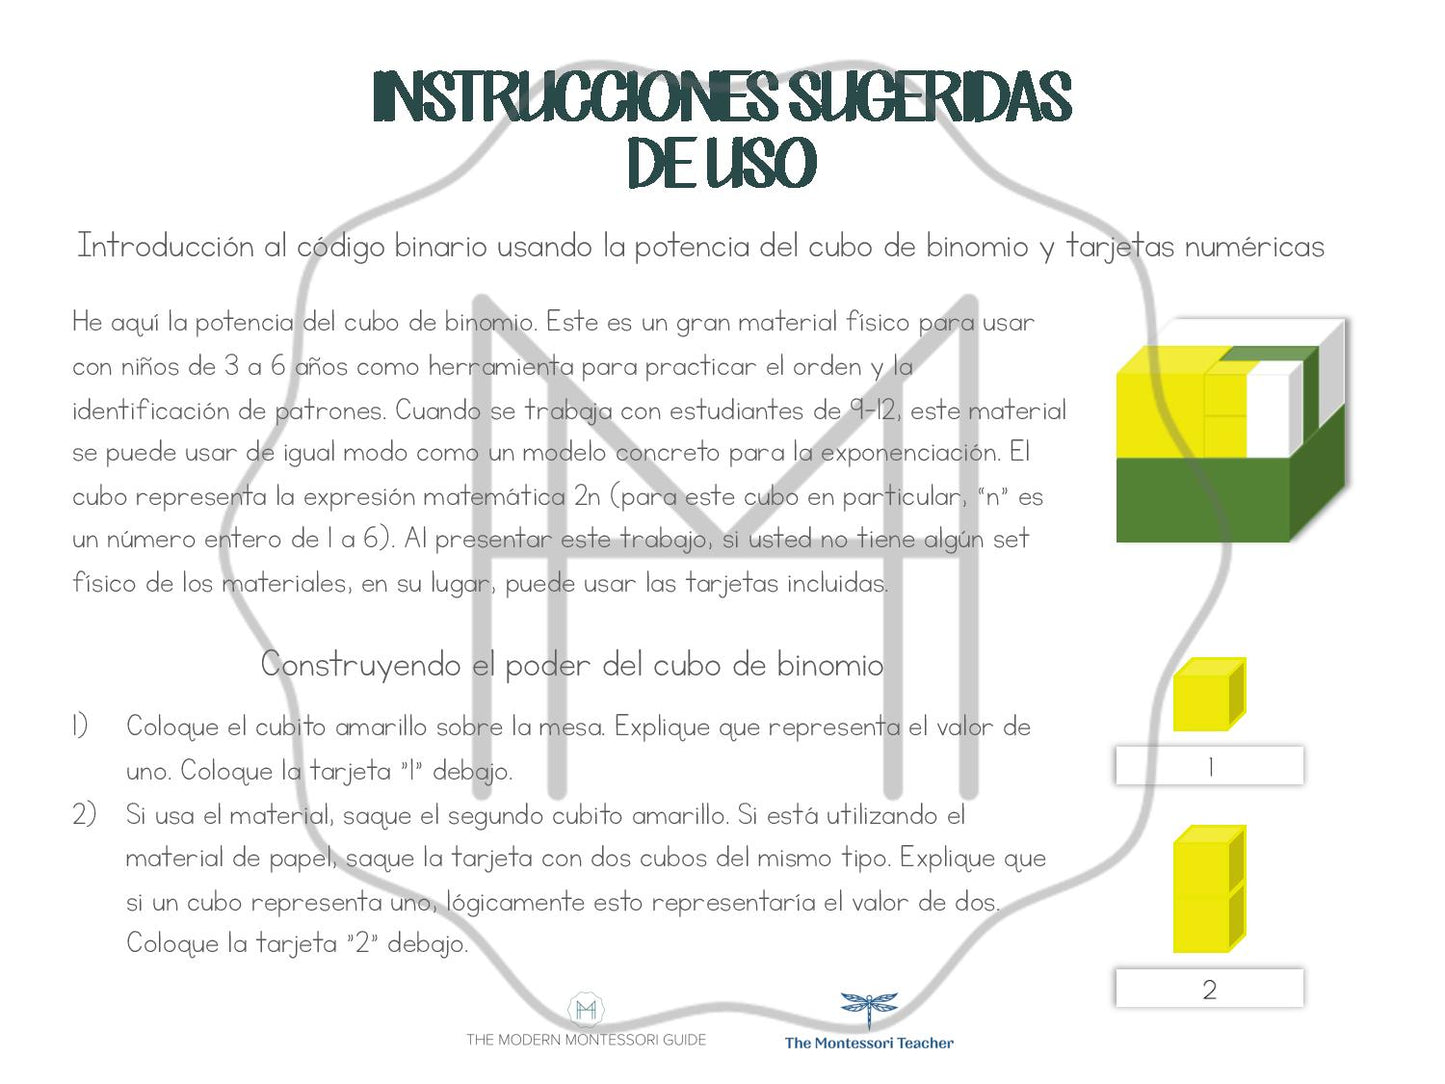 Español - Introducción al código binario usando la potencia del cubo de binomio